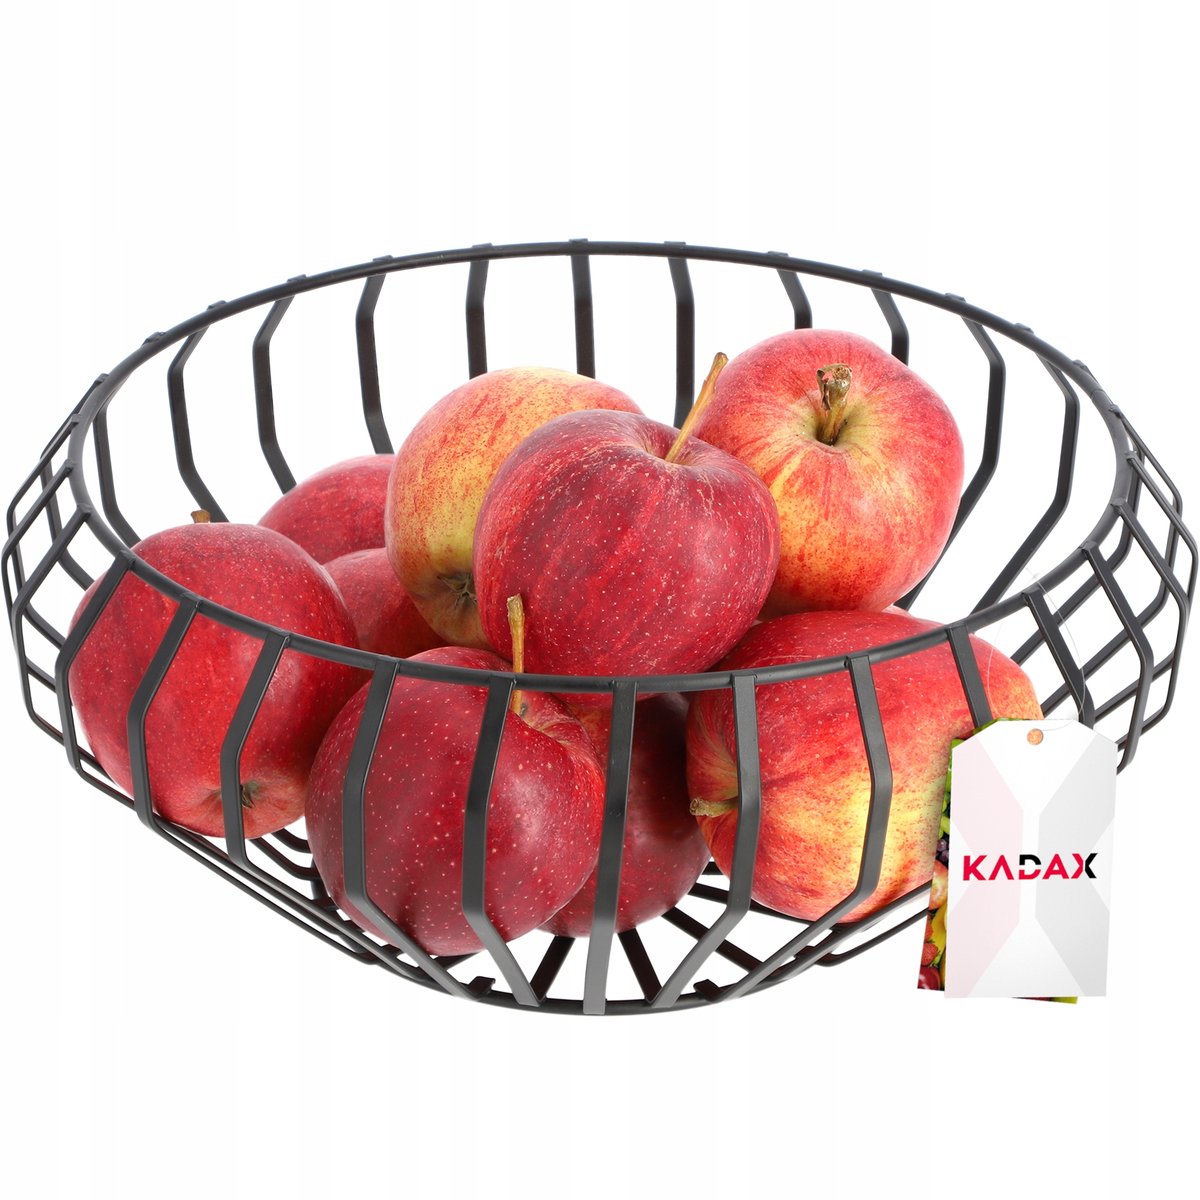 Zdjęcia - Pojemnik na żywność Kadax Koszyk Metalowy Na Owoce Warzywa Czarny Metalowy 